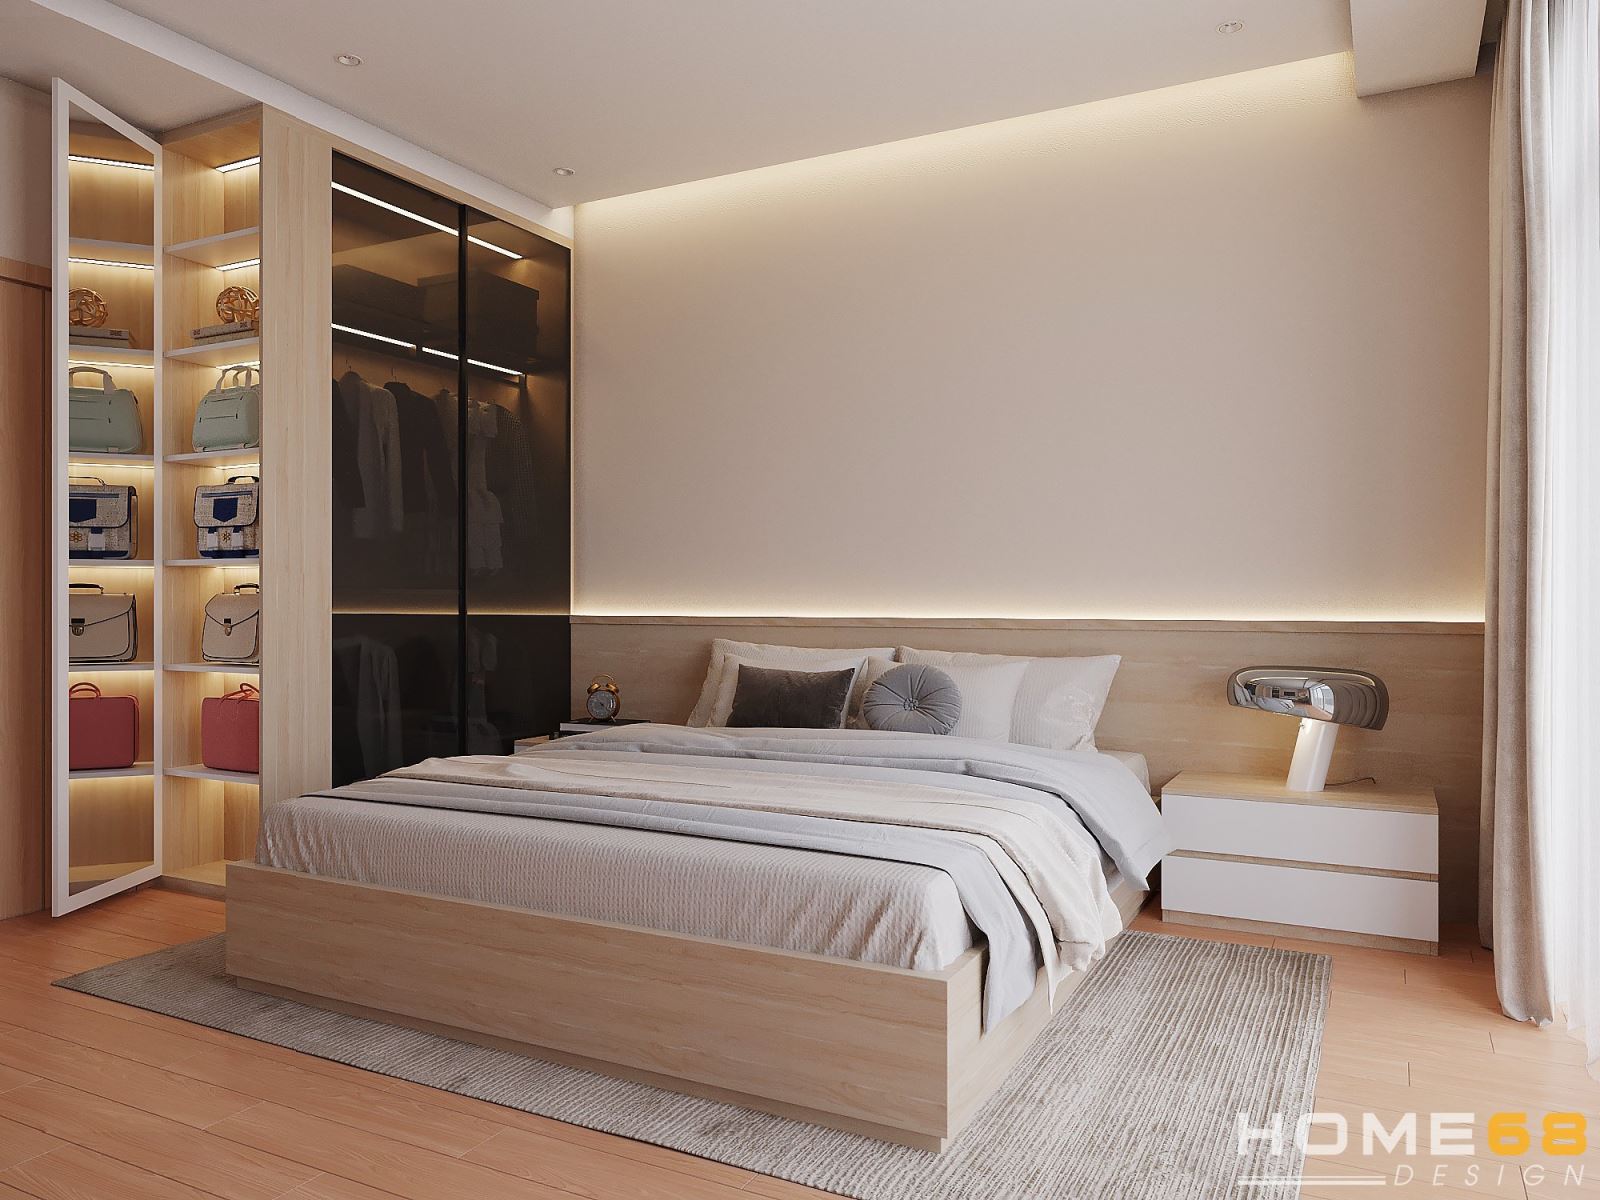 Phòng ngủ được đội ngũ HOME68 thiết kế một cách tỉ mỉ, và kỹ càng